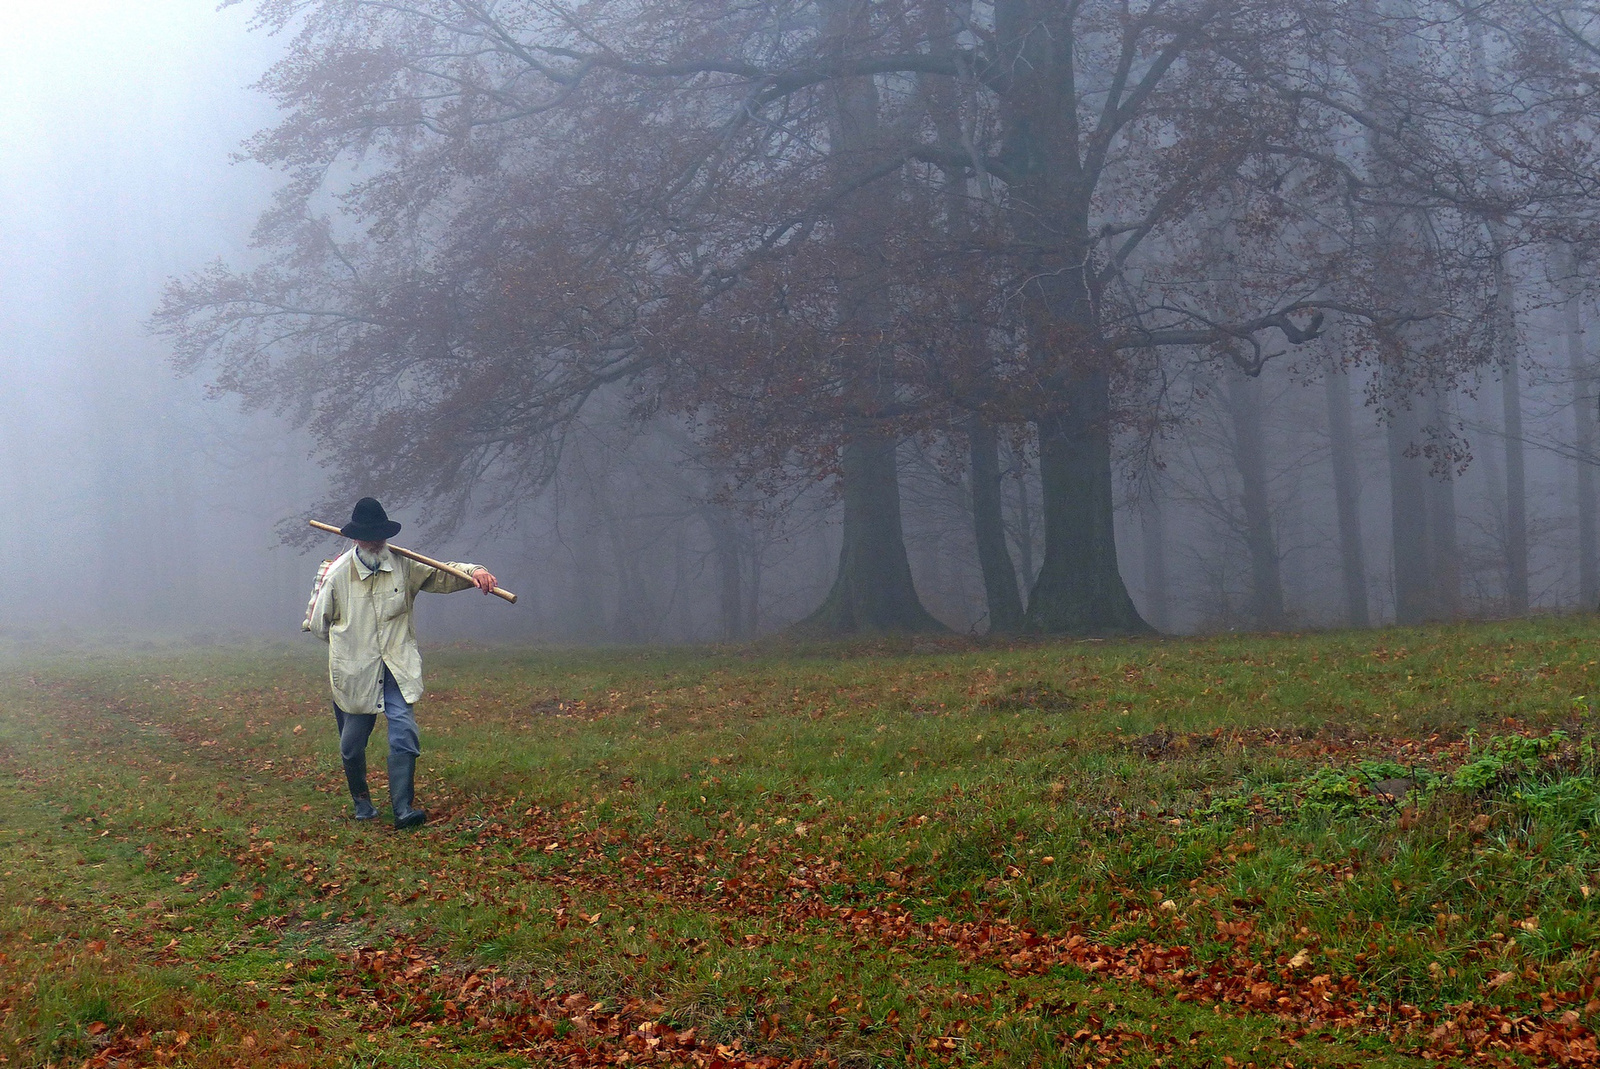 02 A titokzatos vándor a ködös bükkös szélén 2013 őszén